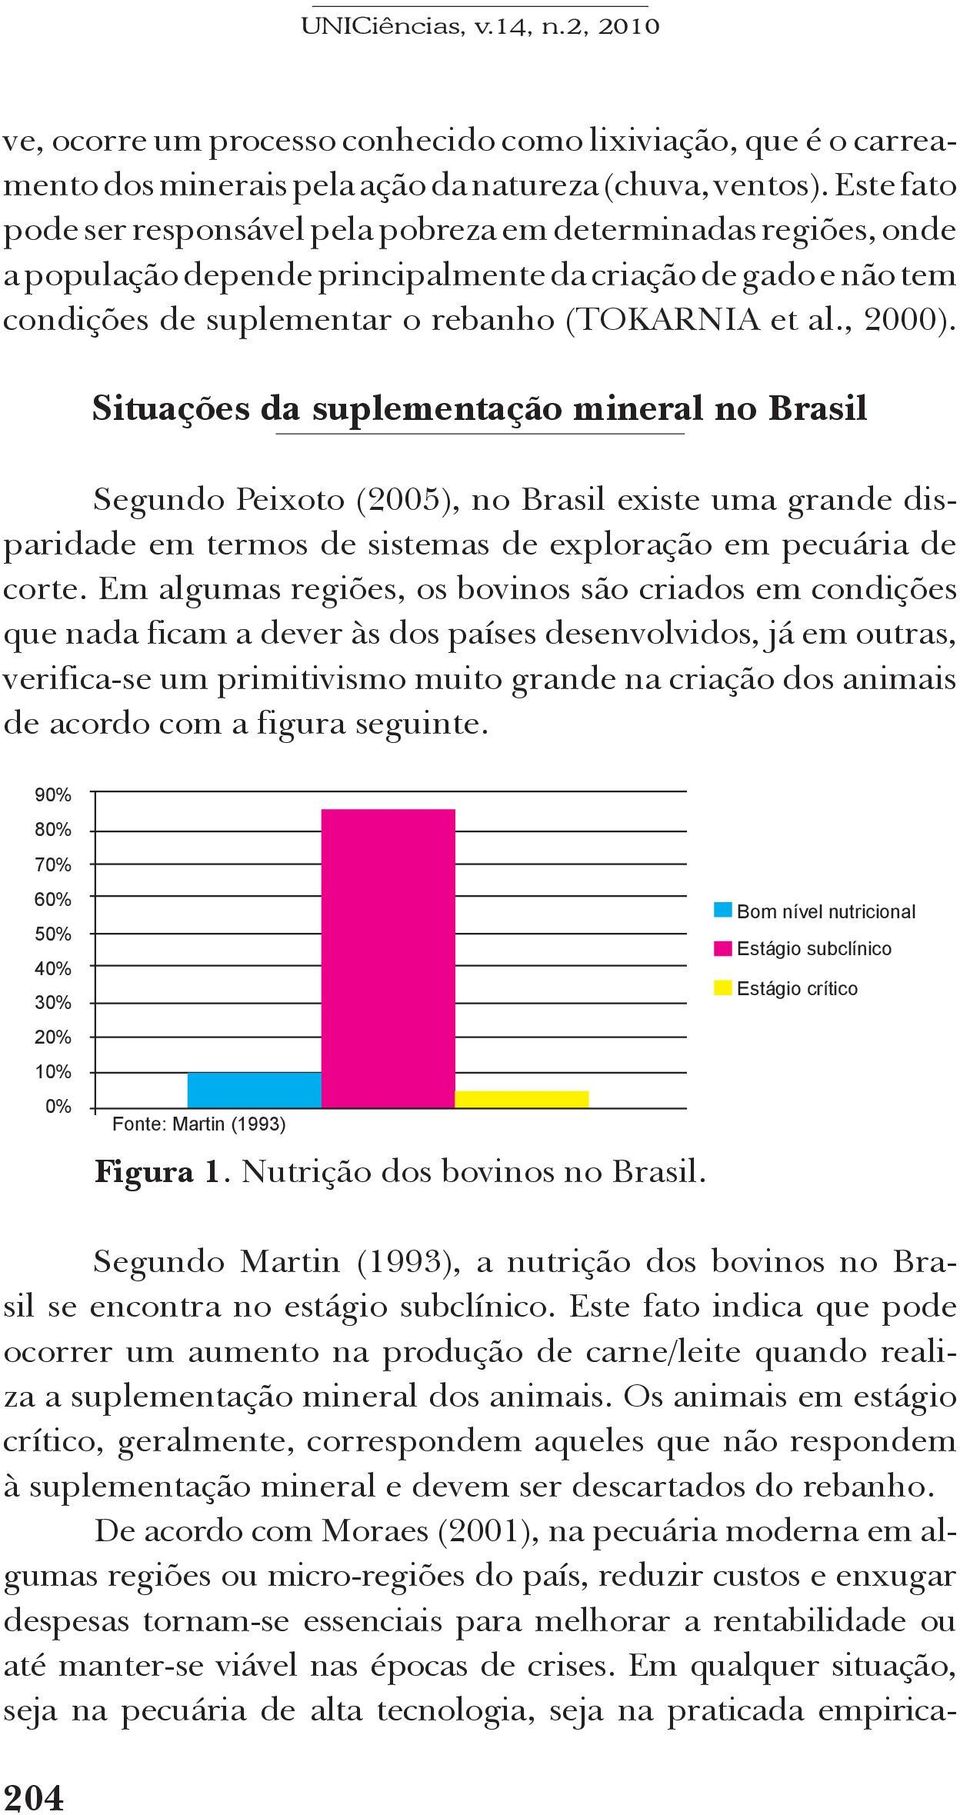 Situações da suplementação mineral no Brasil Segundo Peixoto (2005), no Brasil existe uma grande disparidade em termos de sistemas de exploração em pecuária de corte.